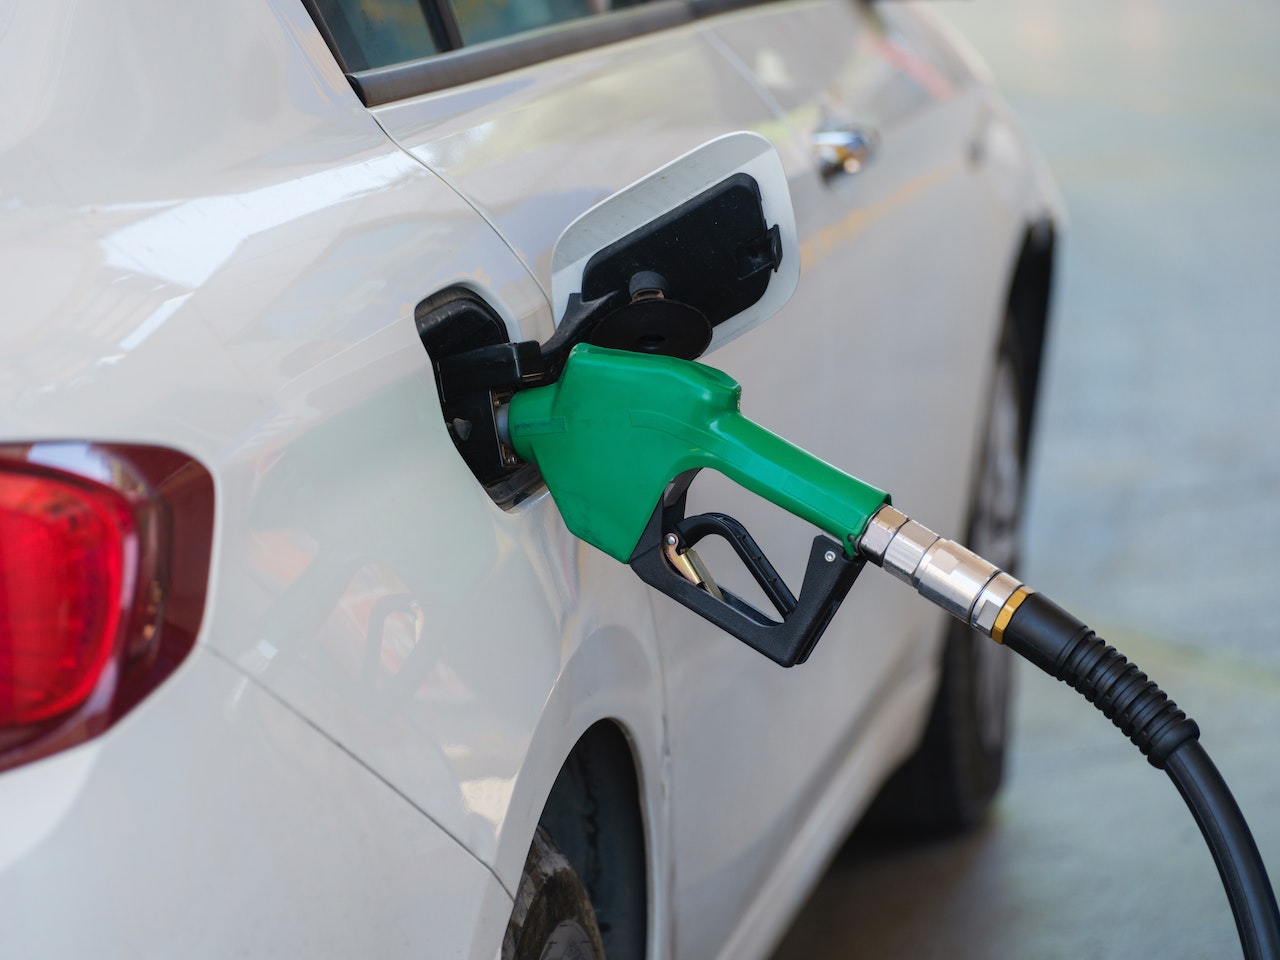 Carburants et pouvoir d'achat : le gouvernement autorise la vente à perte